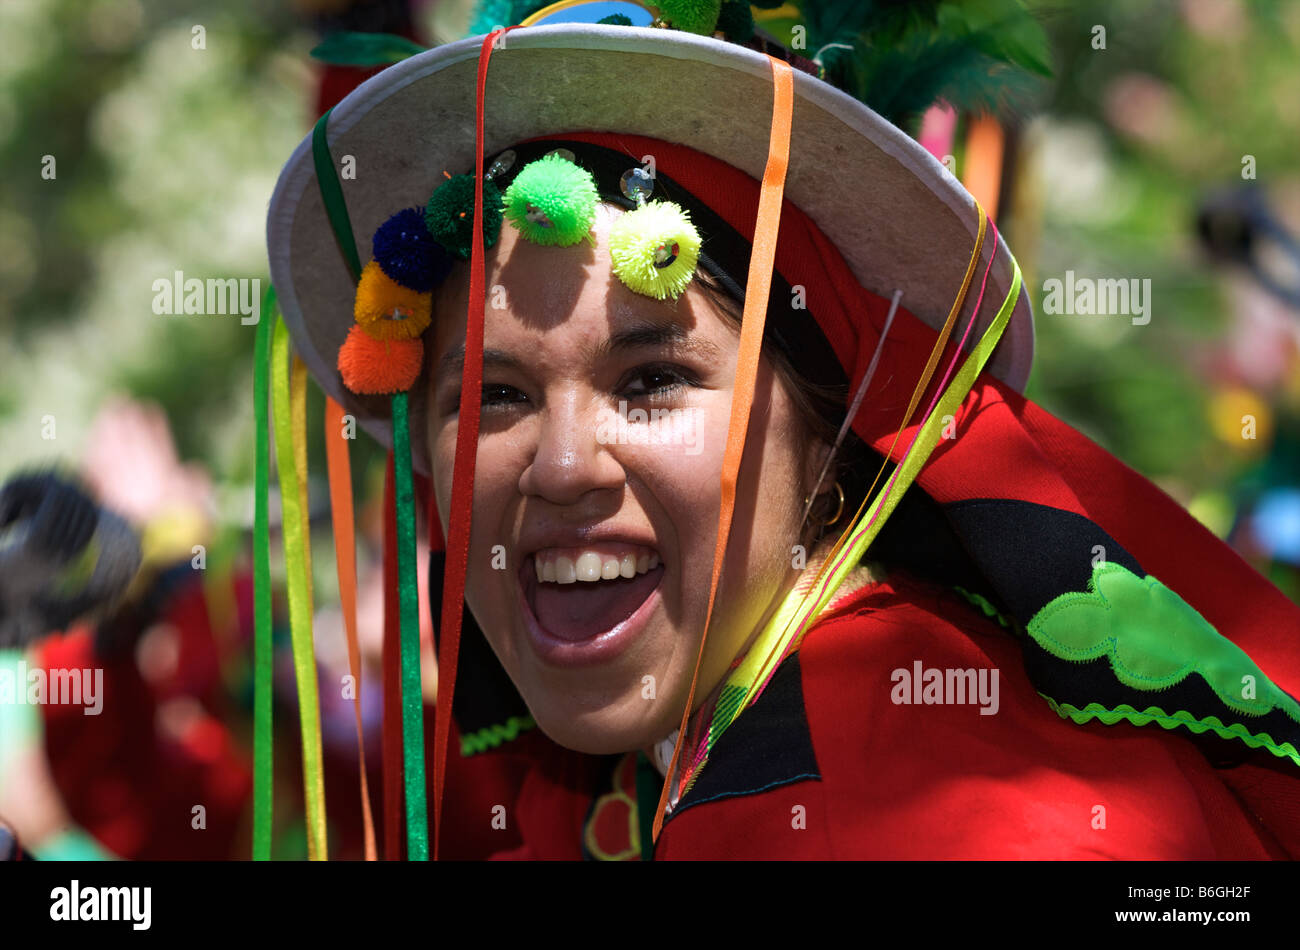 Ragazza ridere in costume rosso con hat e nastri Foto Stock